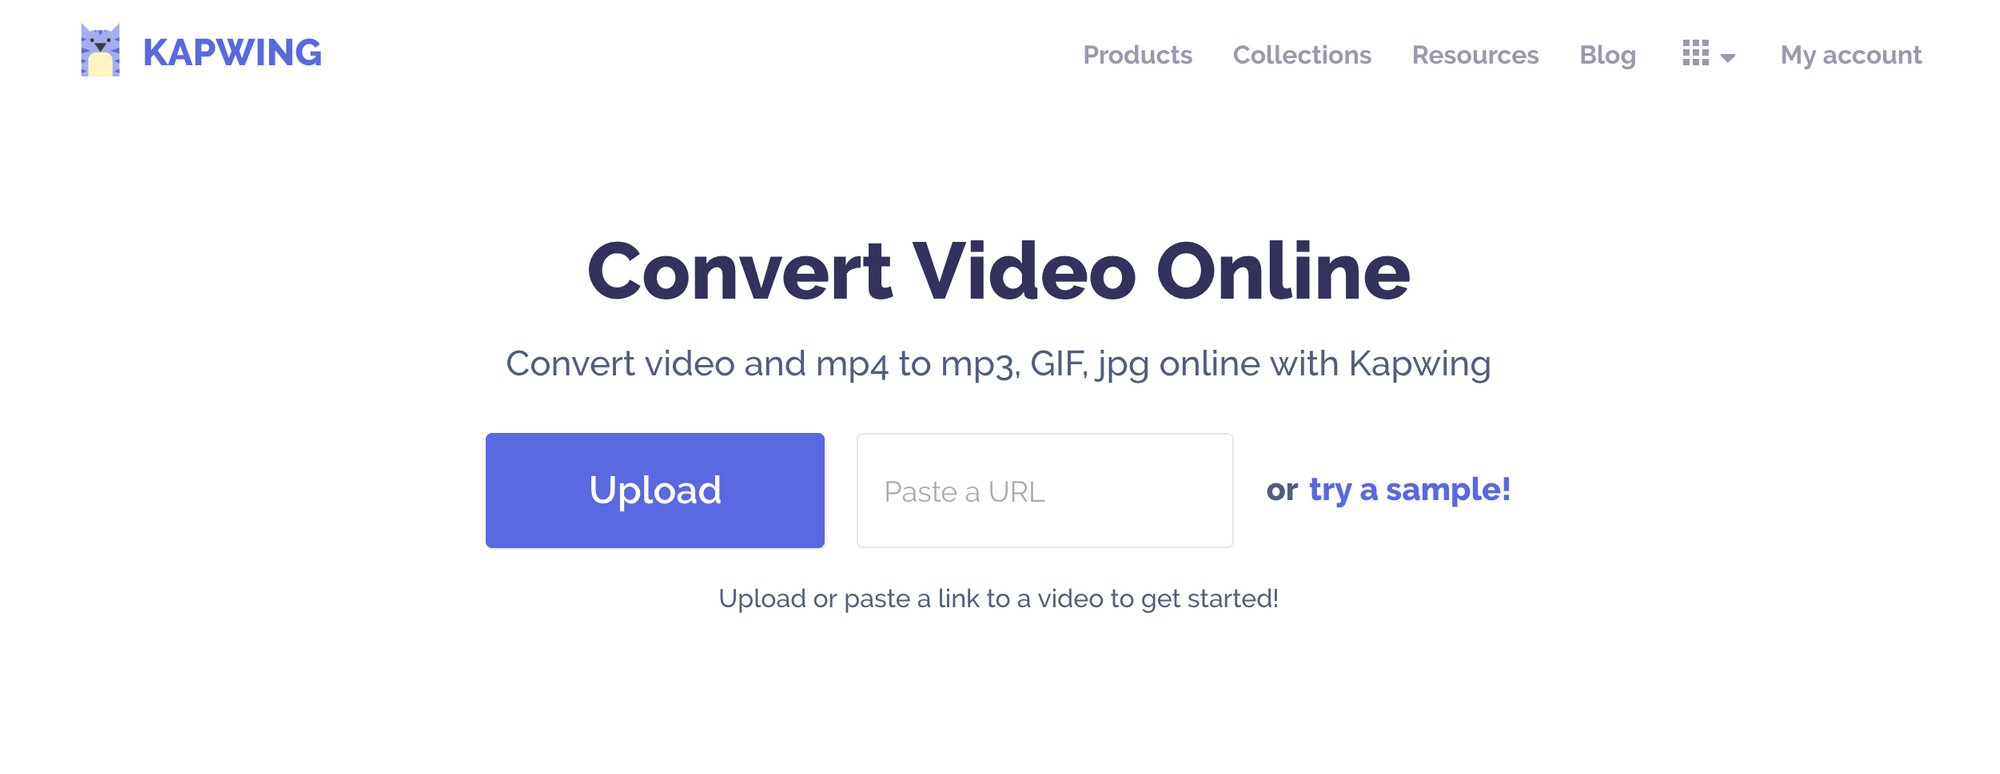 video link to mp4 converter online upload